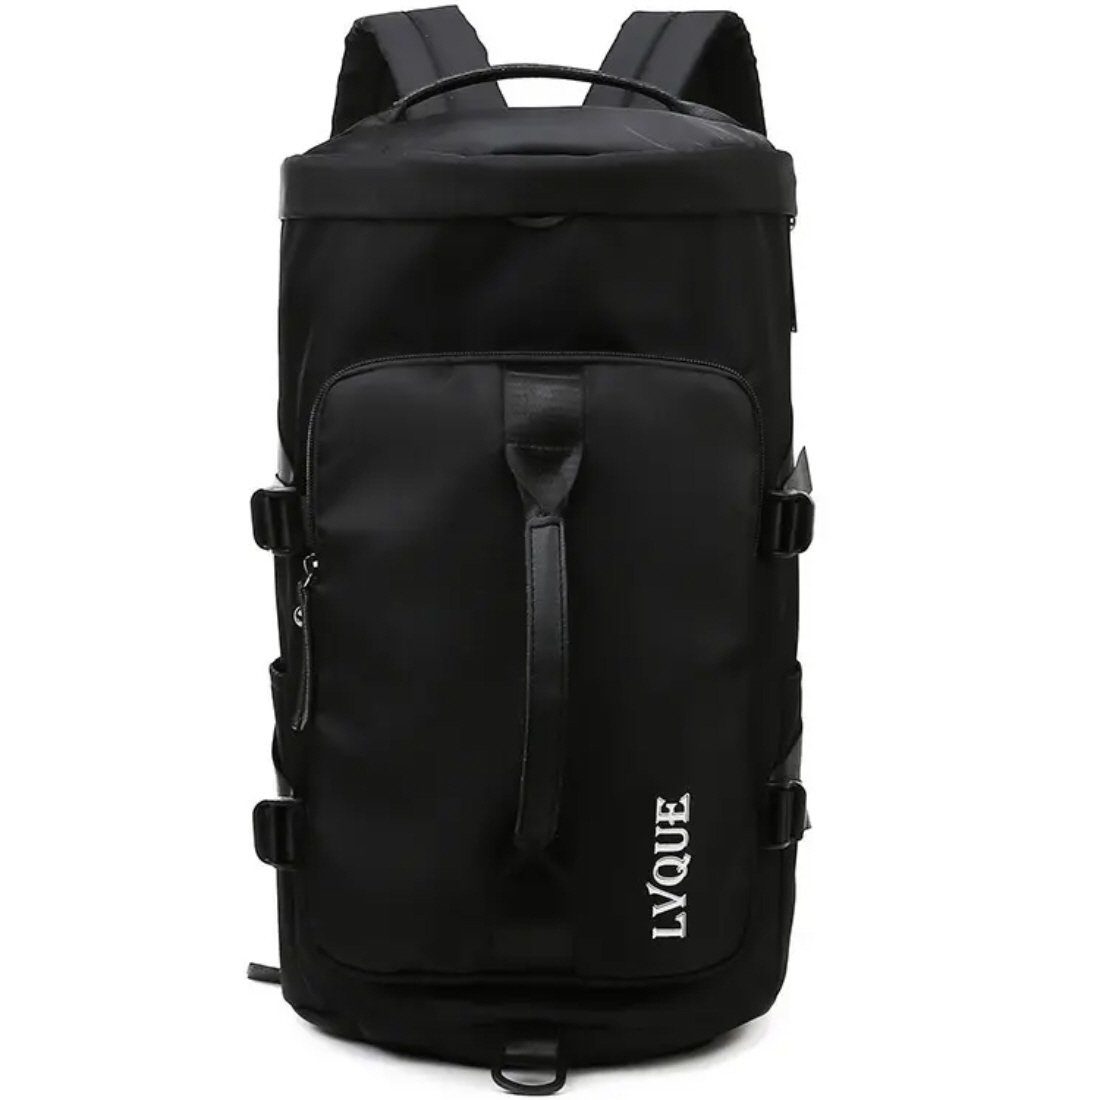 SHG Sporttasche Reisetasche mit Rucksackfunktion Handgepäck Rucksack,  Freizeit Reise Sport Arbeit Schule Uni als Rucksack tragbar